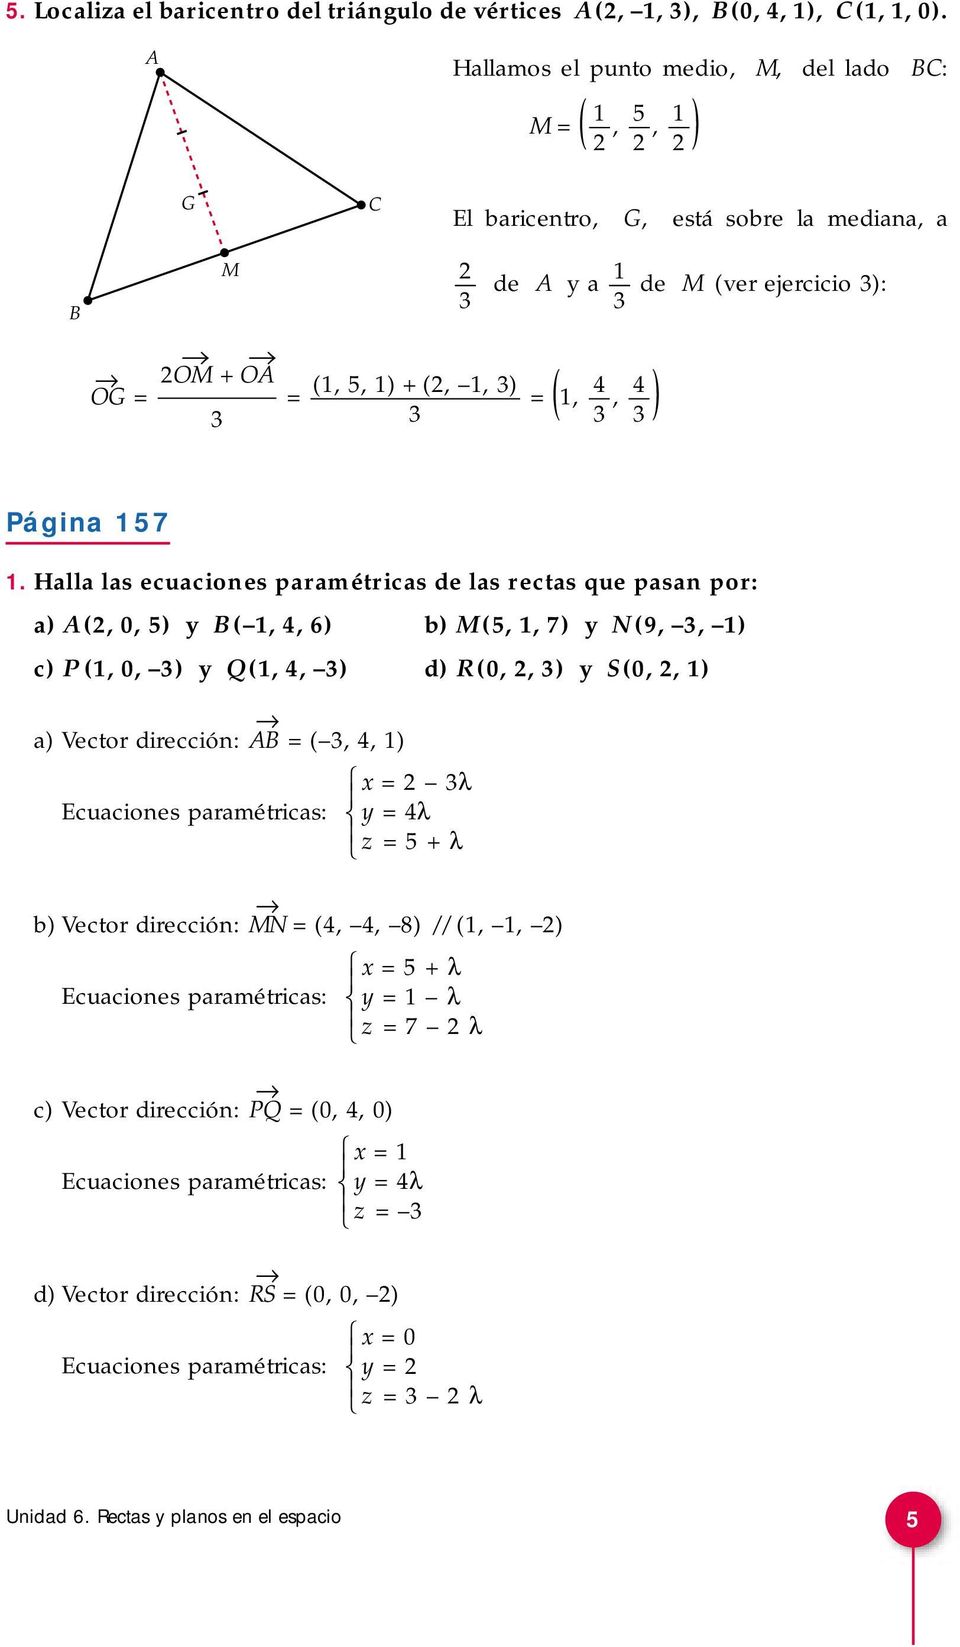 17 1. Halla las ecuaciones paramétricas de las rectas que pasan por: a) A (, 0, ) y B ( 1, 4, 6) b) M (, 1, 7) y N (9,, 1) c) P (1, 0, ) y Q (1, 4, ) d) R(0,, ) y (0,, 1) a) Vector dirección: AB